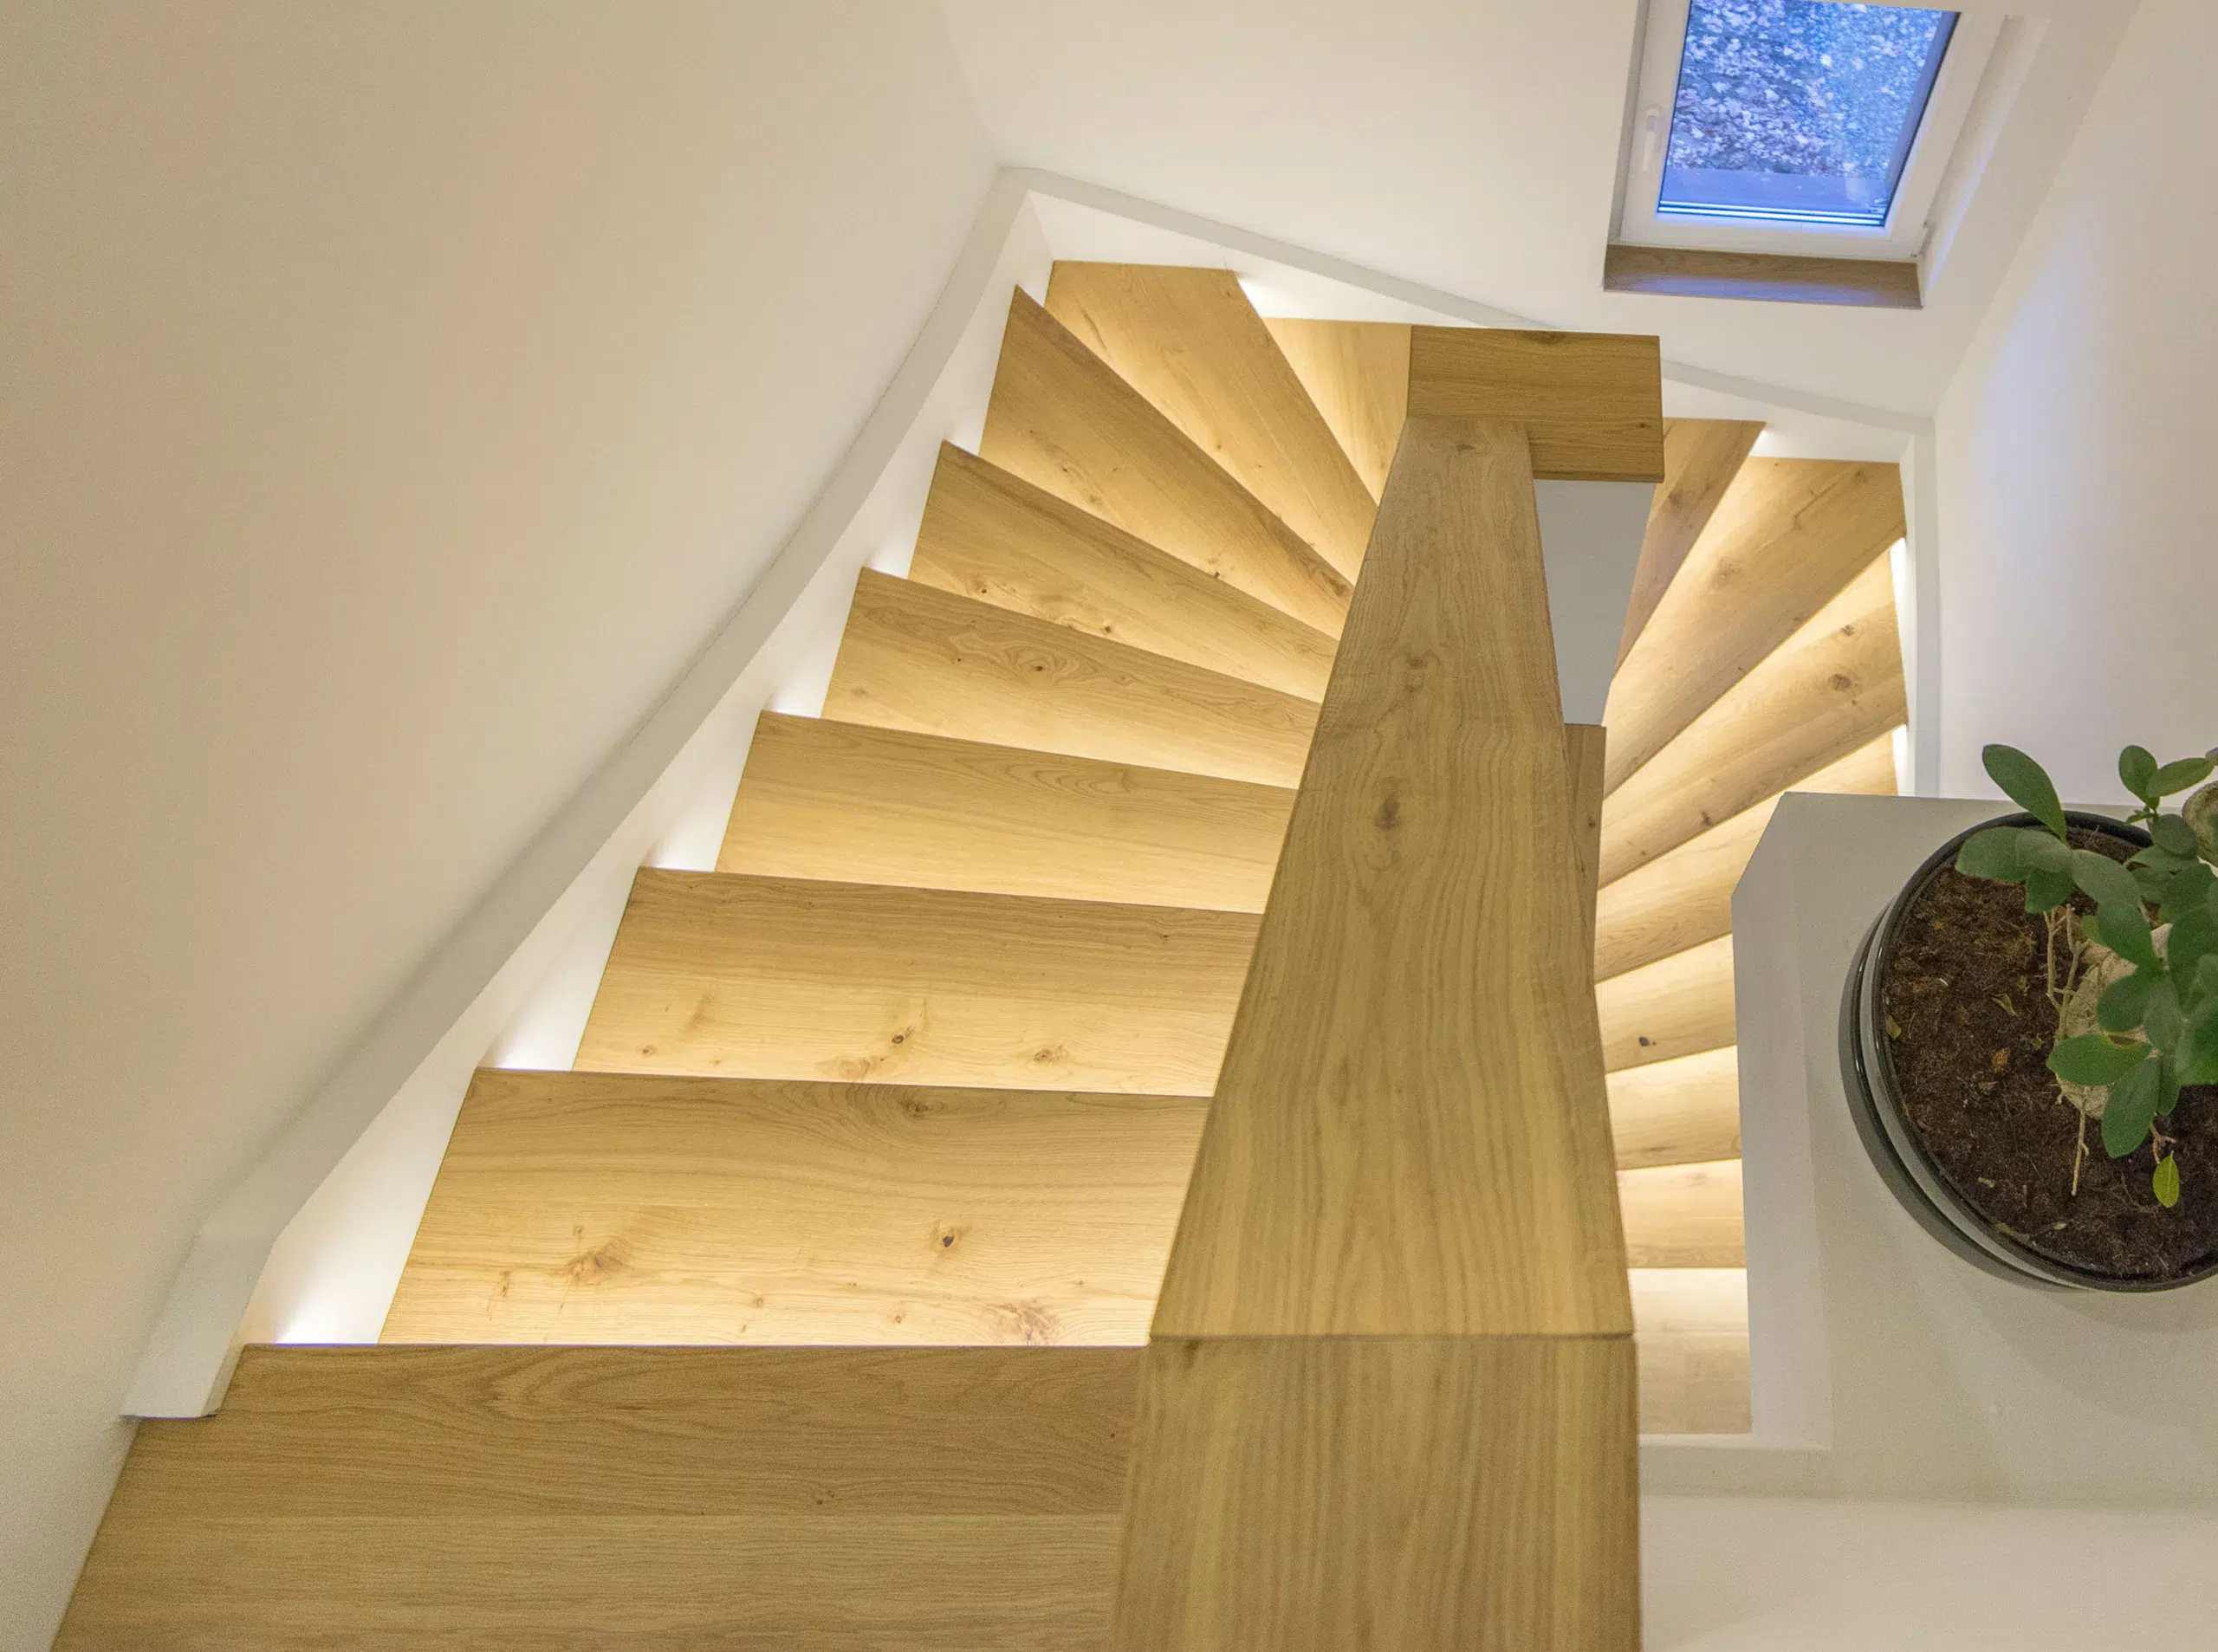 Eine Wendeltreppe mit Treppenstufen aus Holz und integrierter Beleuchtung in einem Haus.